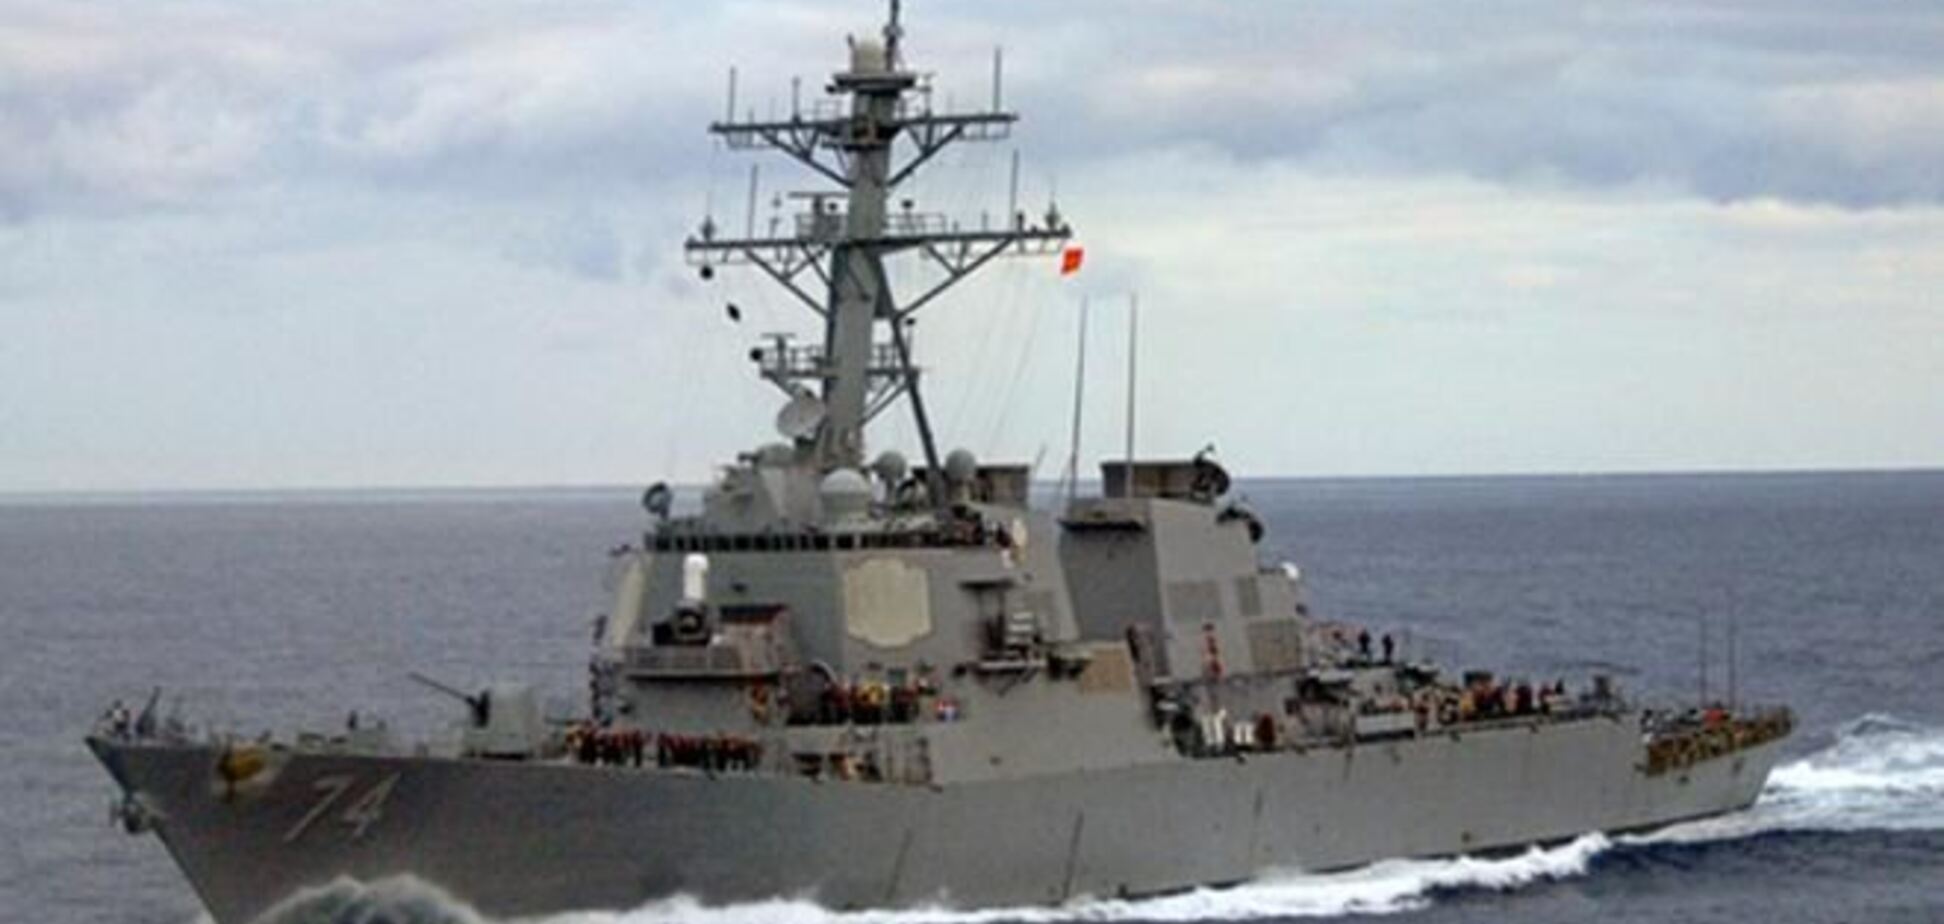 Бізнесмен розкрив секрети ВМС США за квитки на Леді Гагу і повій